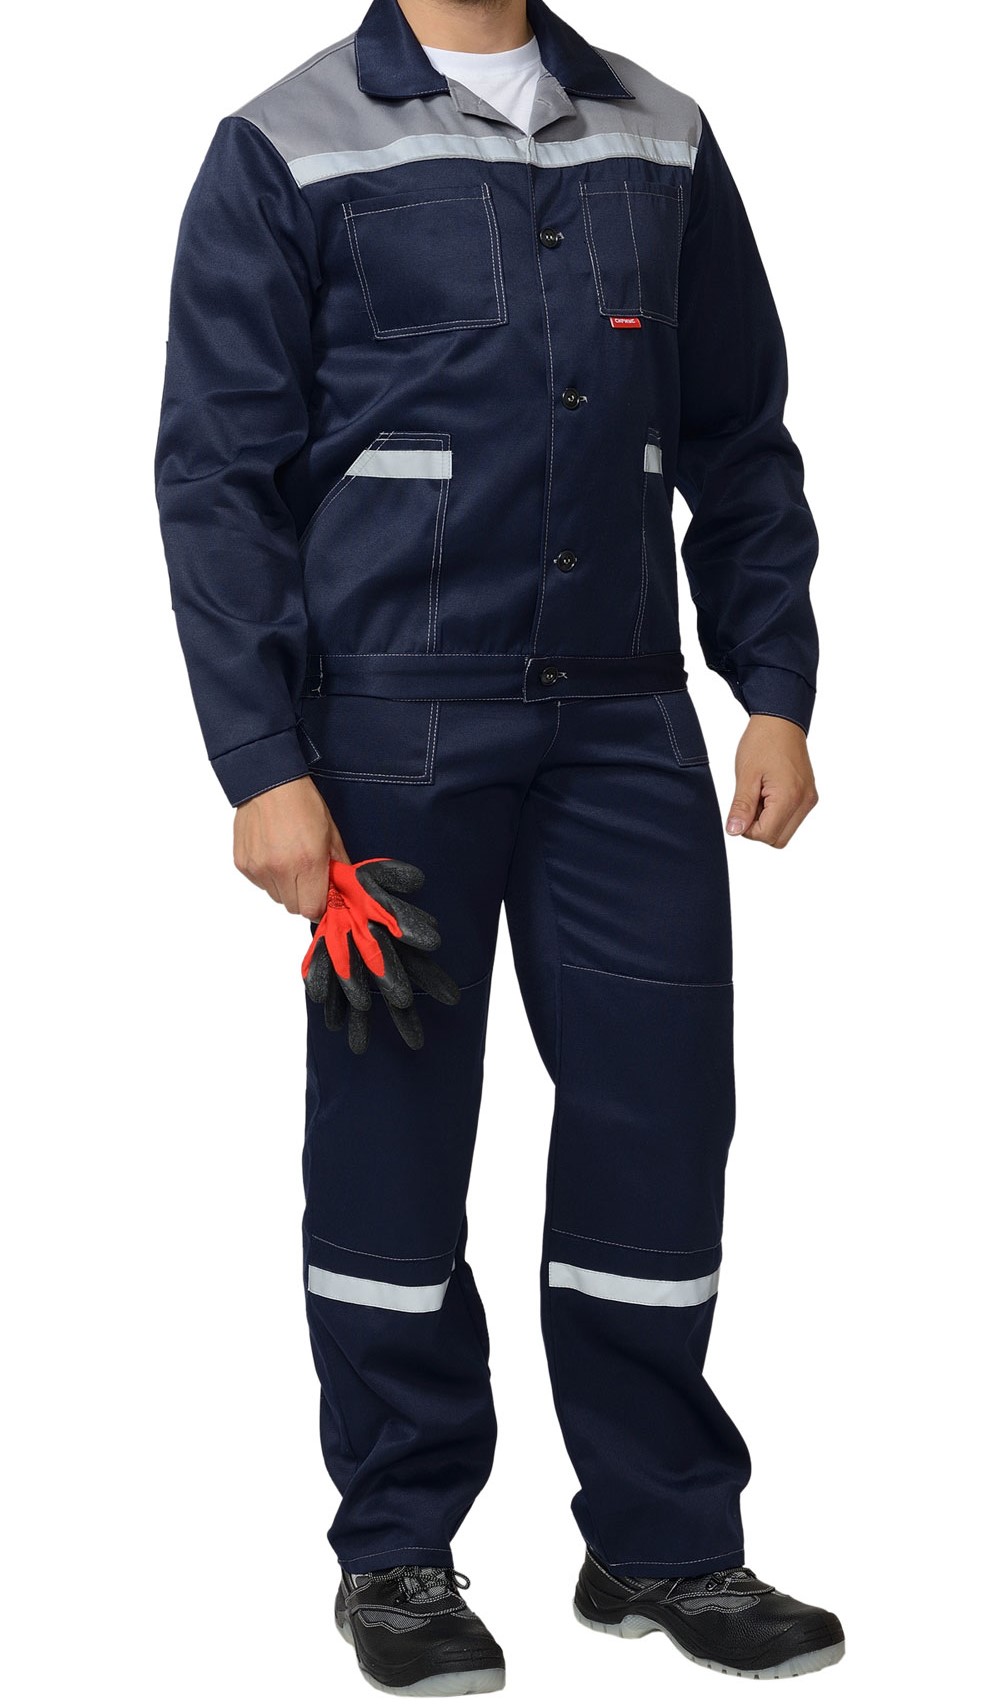 Костюм "С-Легионер" куртка, брюки / куртка, полукомбинезон (с СОП и без), разные цвета(синий, васильковый) - б/с - фото 6